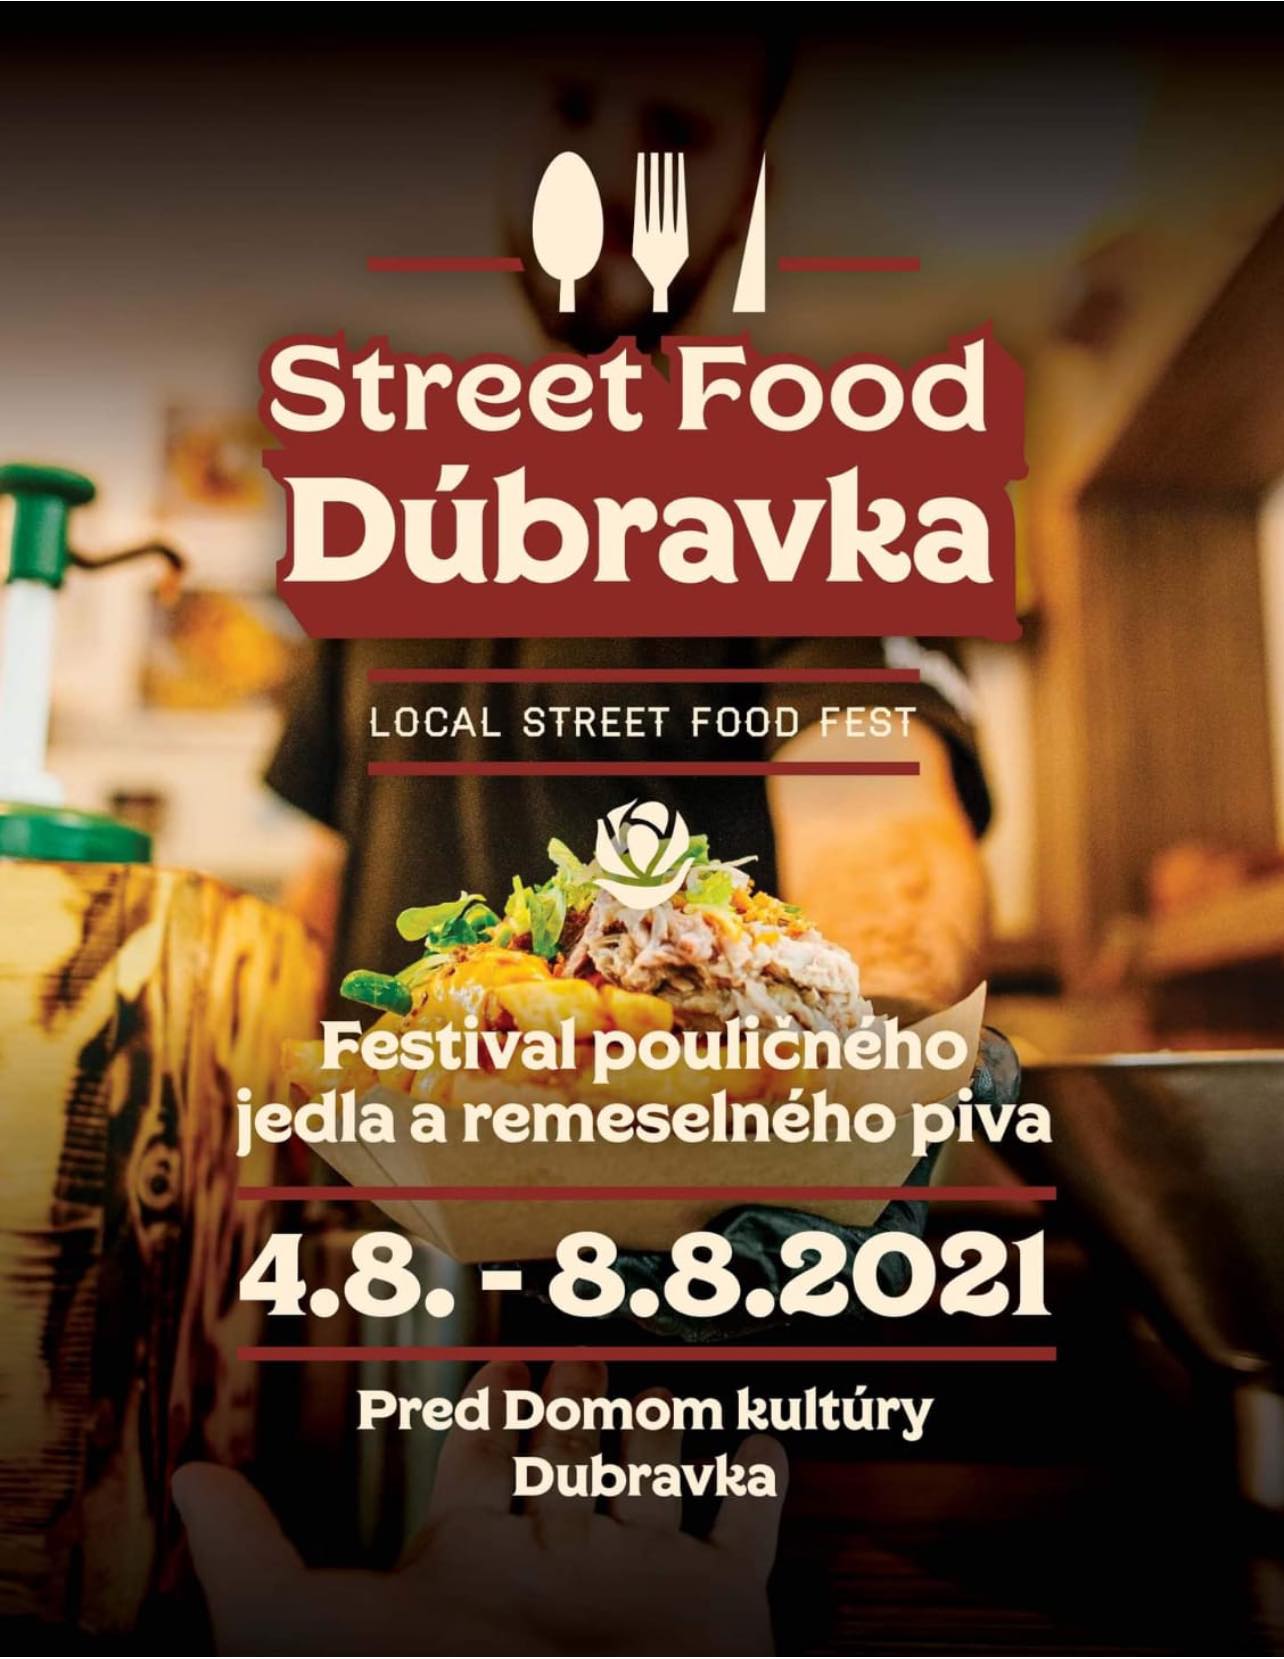 NOVÉ - - - Street food festival Dúbravka 2021 - festival pouličného jedla a remeselného piva